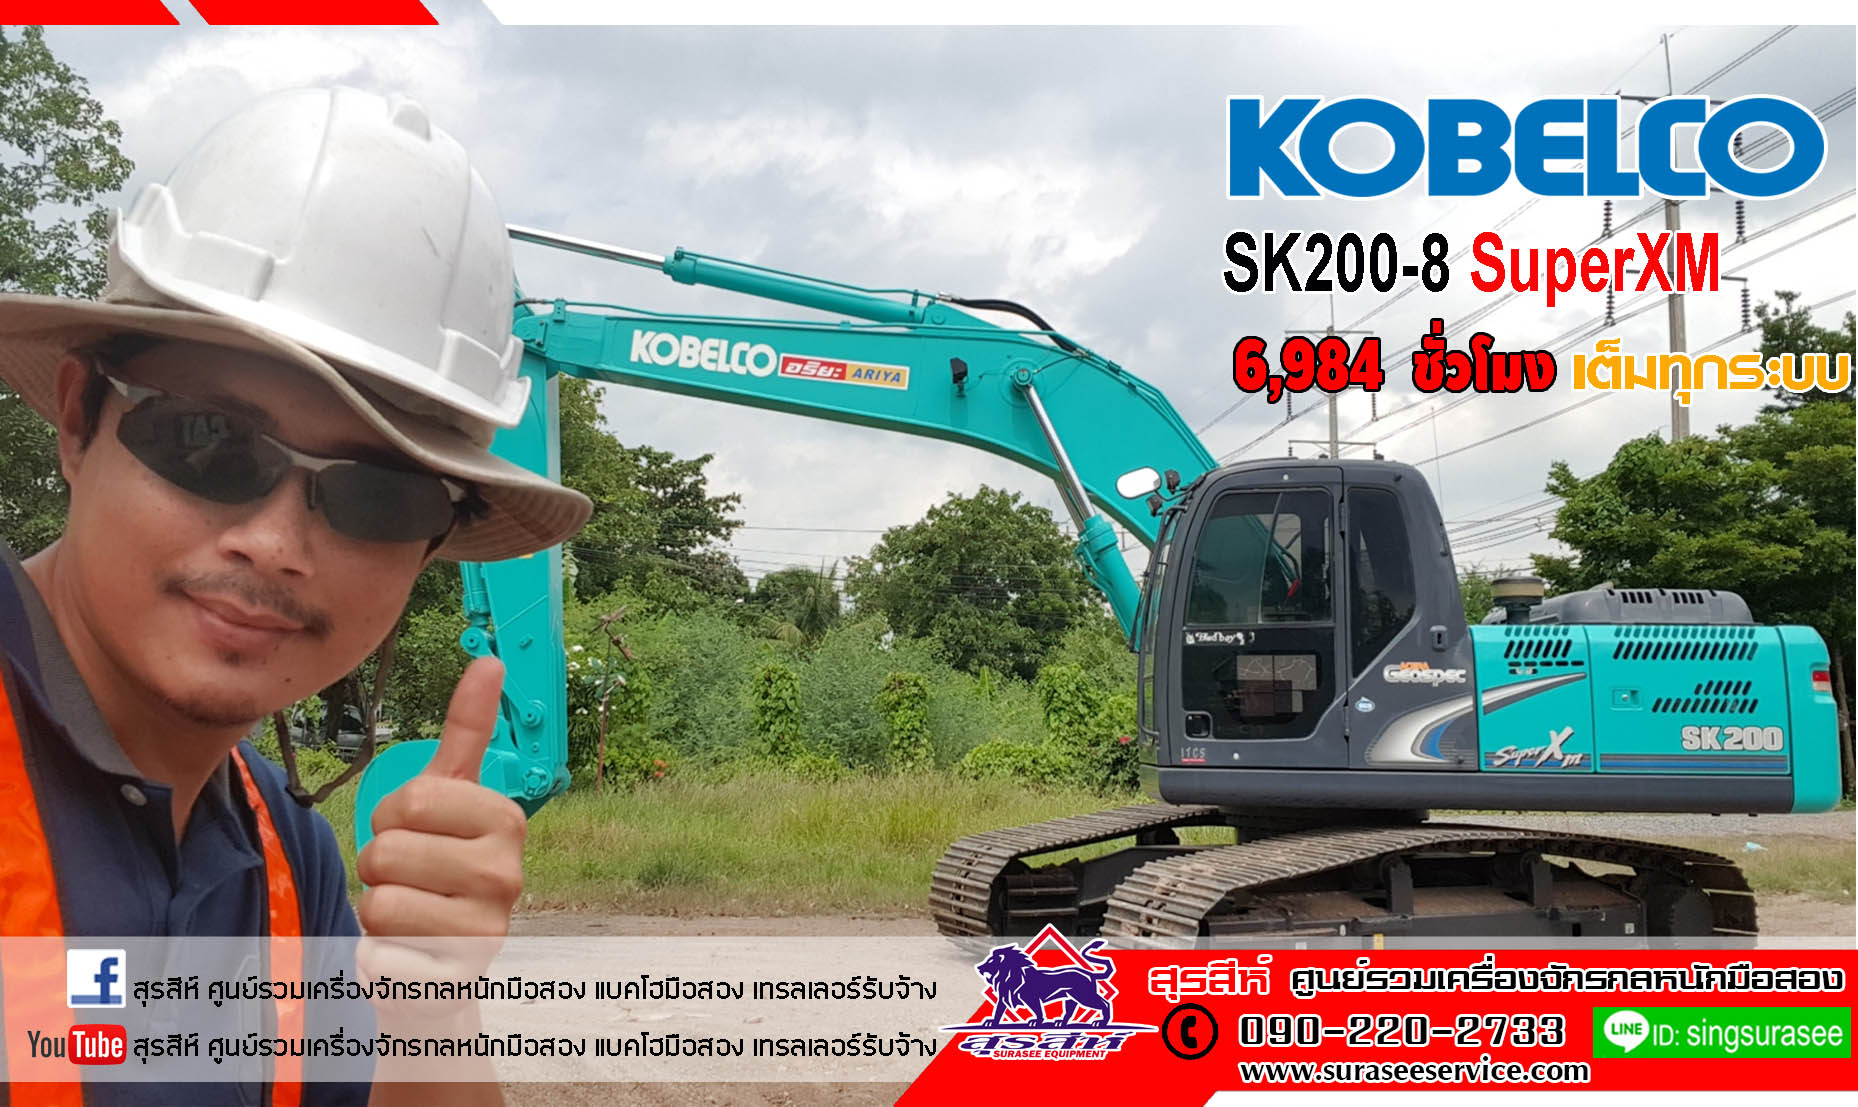  ราคา 2.4 ล้าน KOBELCO SK200-8 Yn12 SuperXM ใช้งาน 6 พันชั่วโมง สภาพนางฟ้า